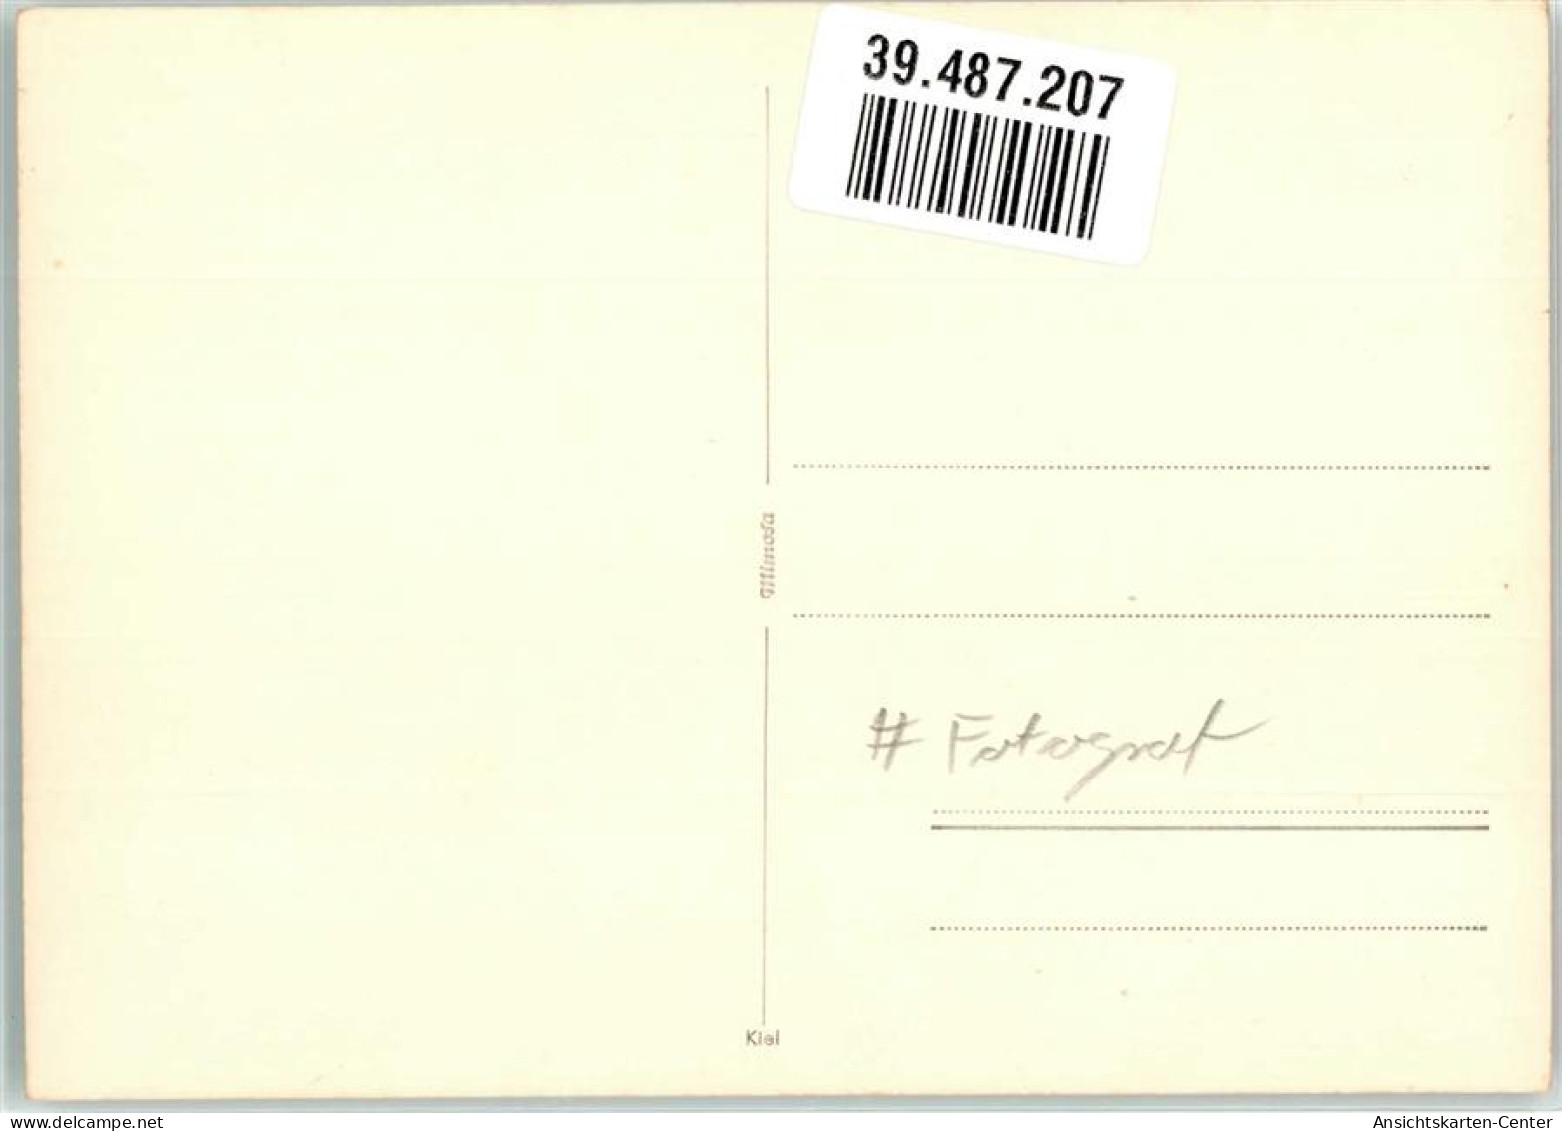 39487207 - Feldberg , Schwarzwald - Feldberg